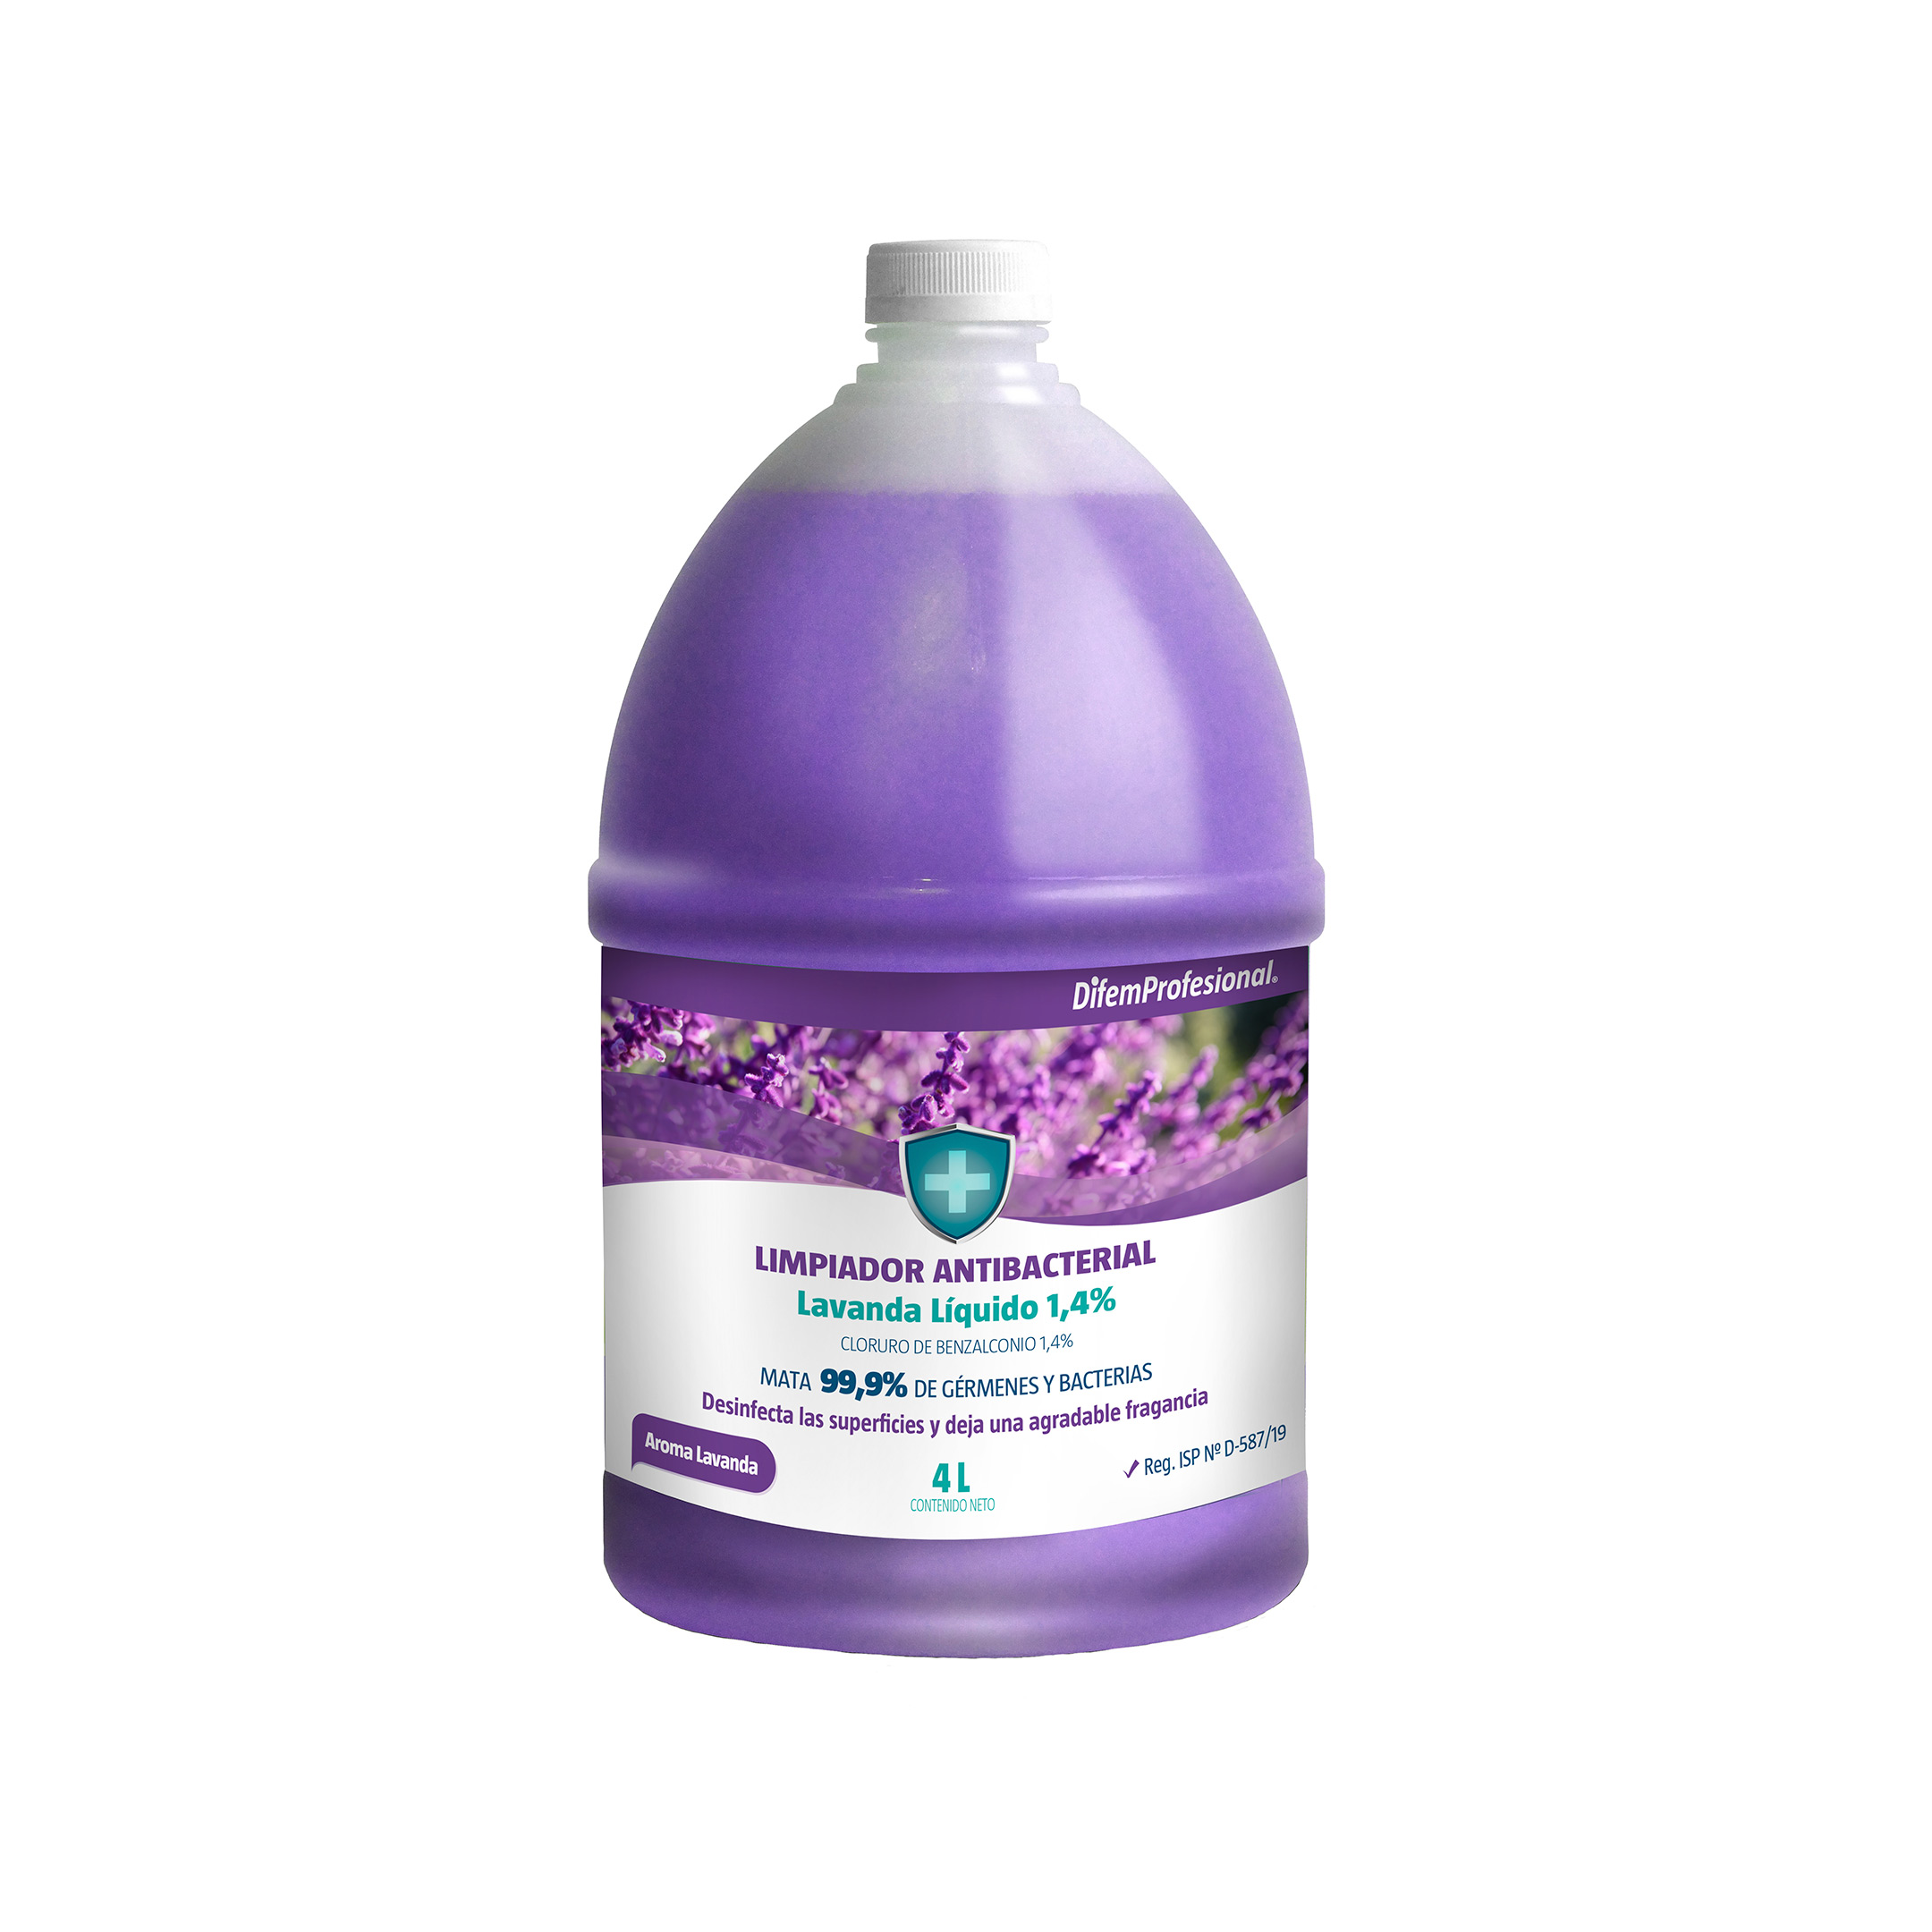 Limpiador líquido desinfectante, Cloruro de Benzalconio 1,4%, mata el 99,9% de germenes y bacterias, desinfecta las superficies y deja una agradable aroma.